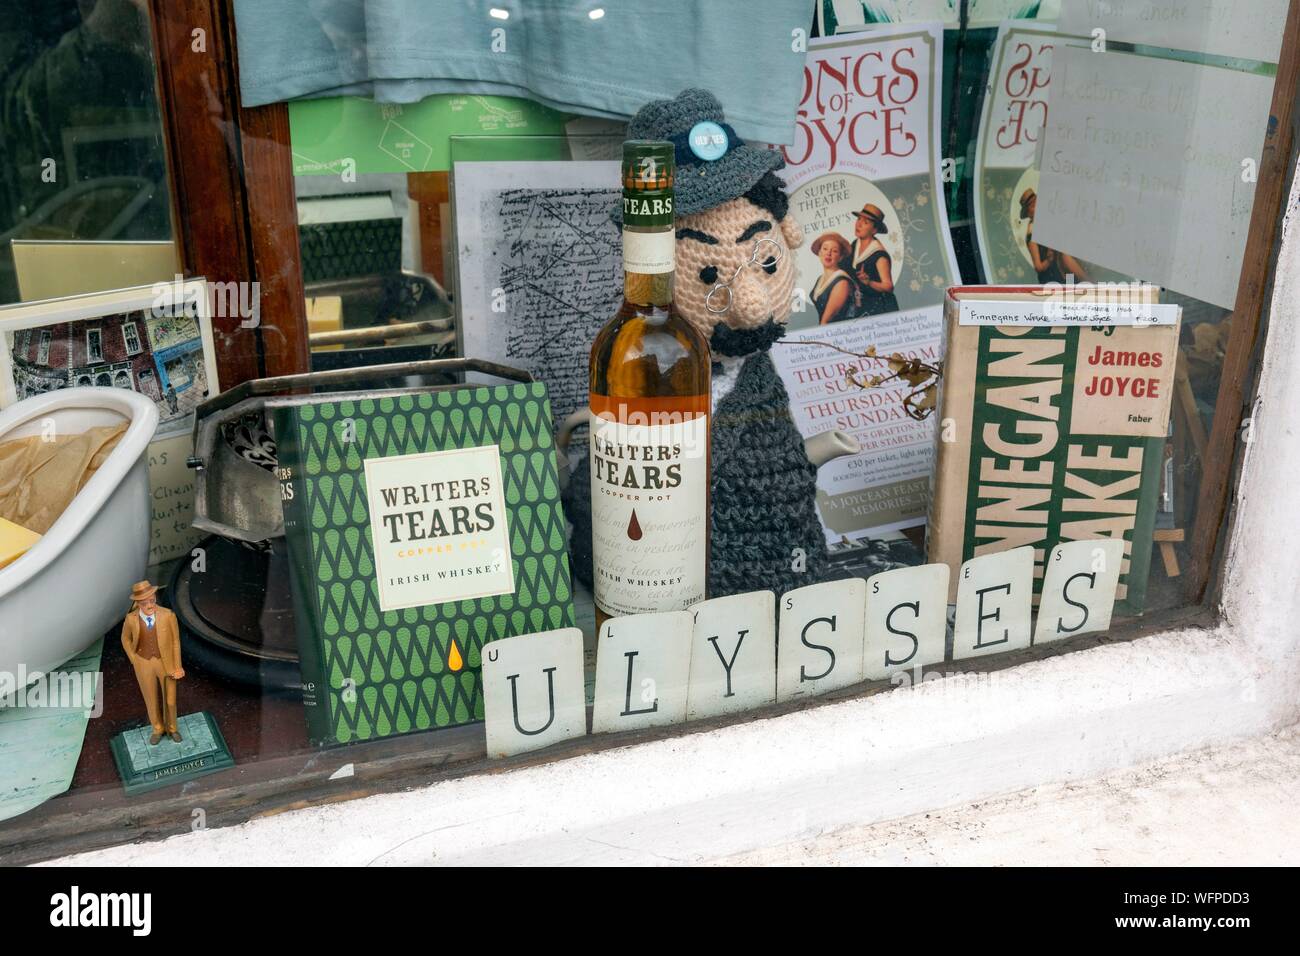 Reland, Dublin, Lincoln, la pharmacie Sweny cité dans le livre Ulysses est aujourd'hui un musée à la gloire de James Joyce avec lectures quotidiennes Banque D'Images